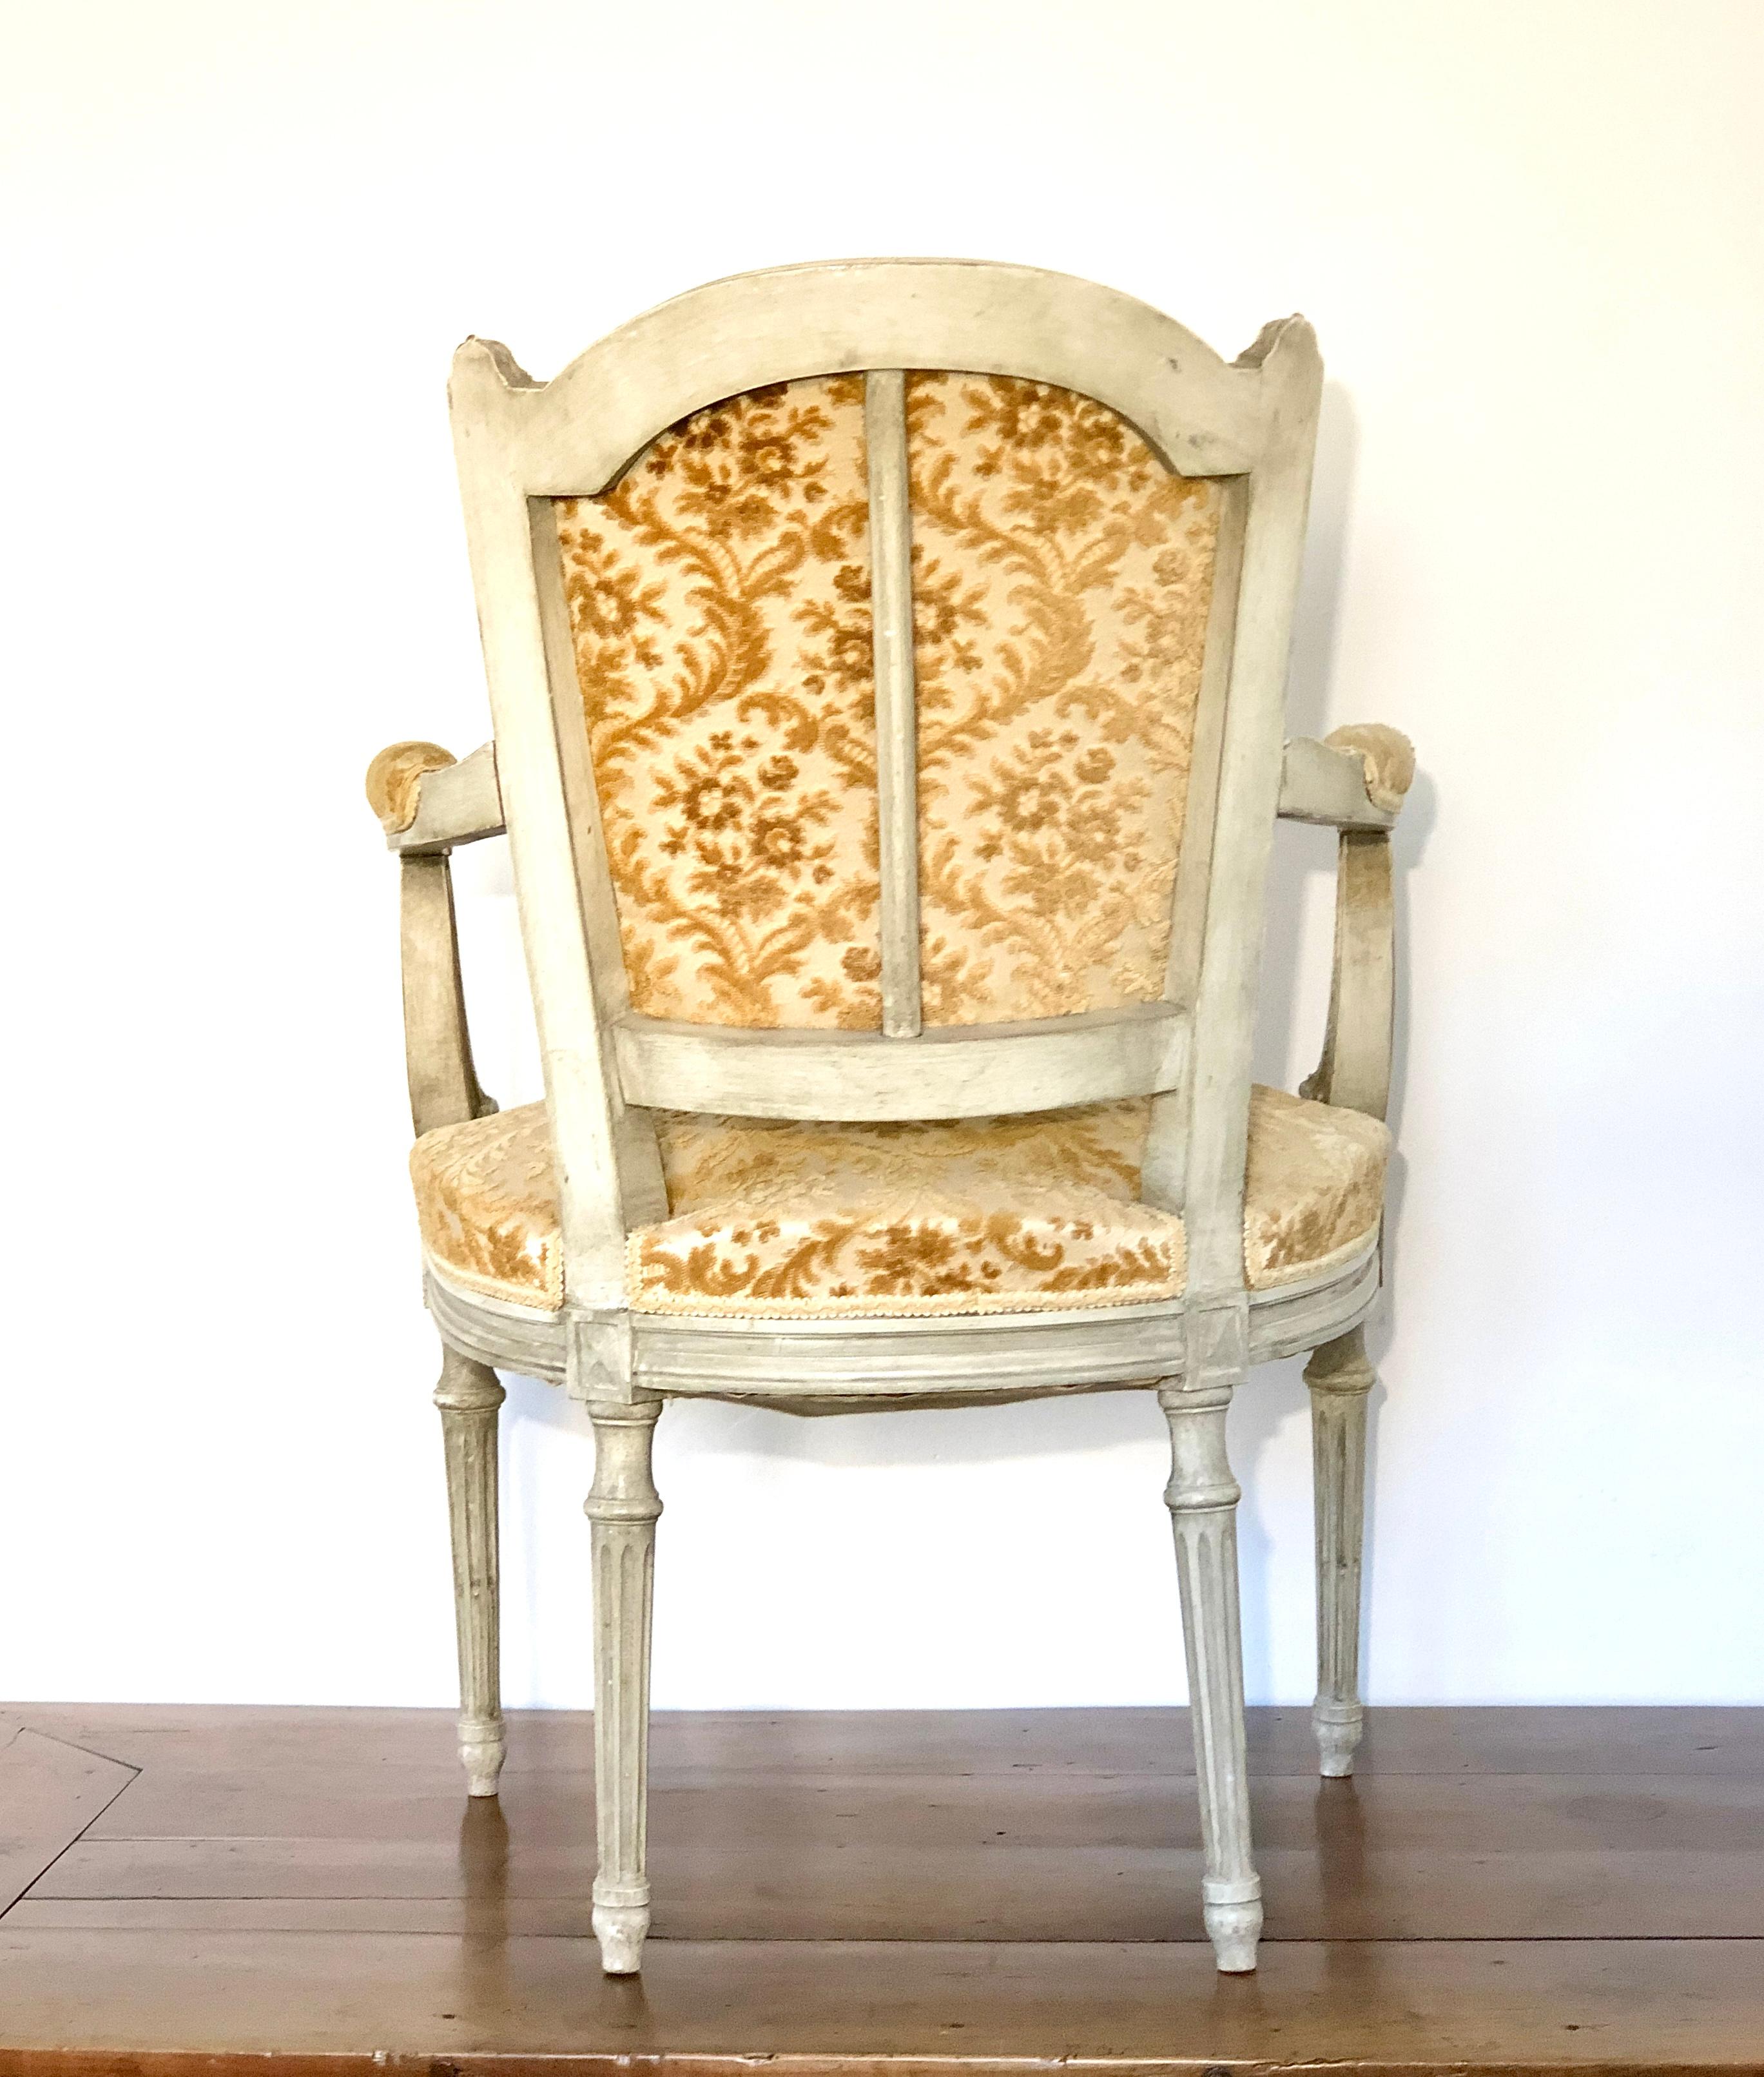 Ensemble de deux fauteuils du XIXe siècle, dans un style typiquement Louis XVI. Les dossiers sont en forme de 